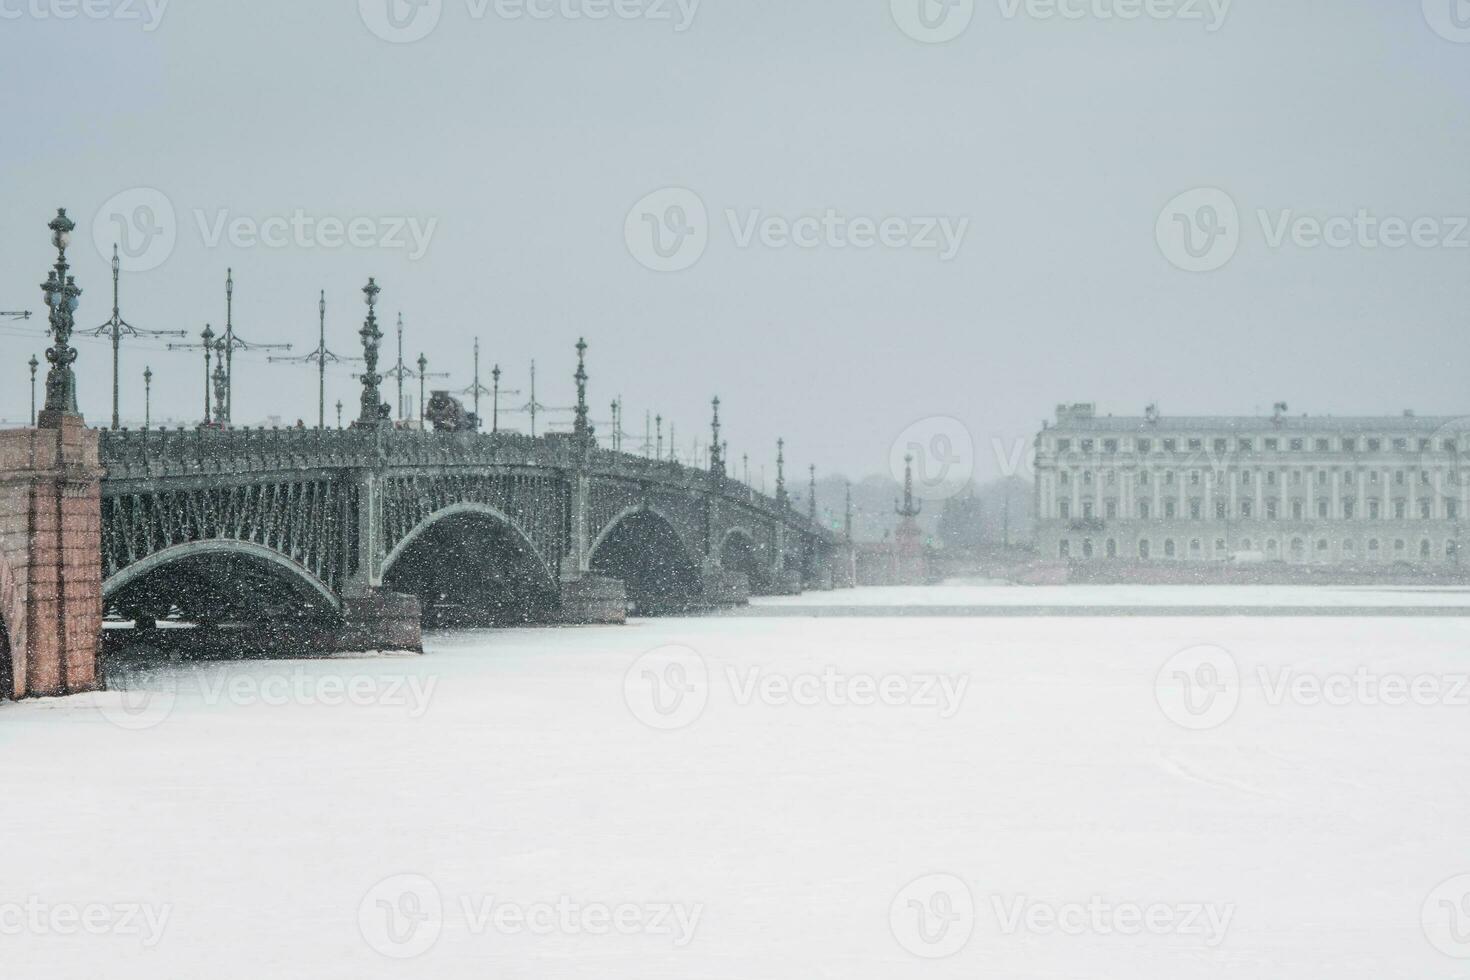 palats bro i st. petersburg under en snöfall. foto